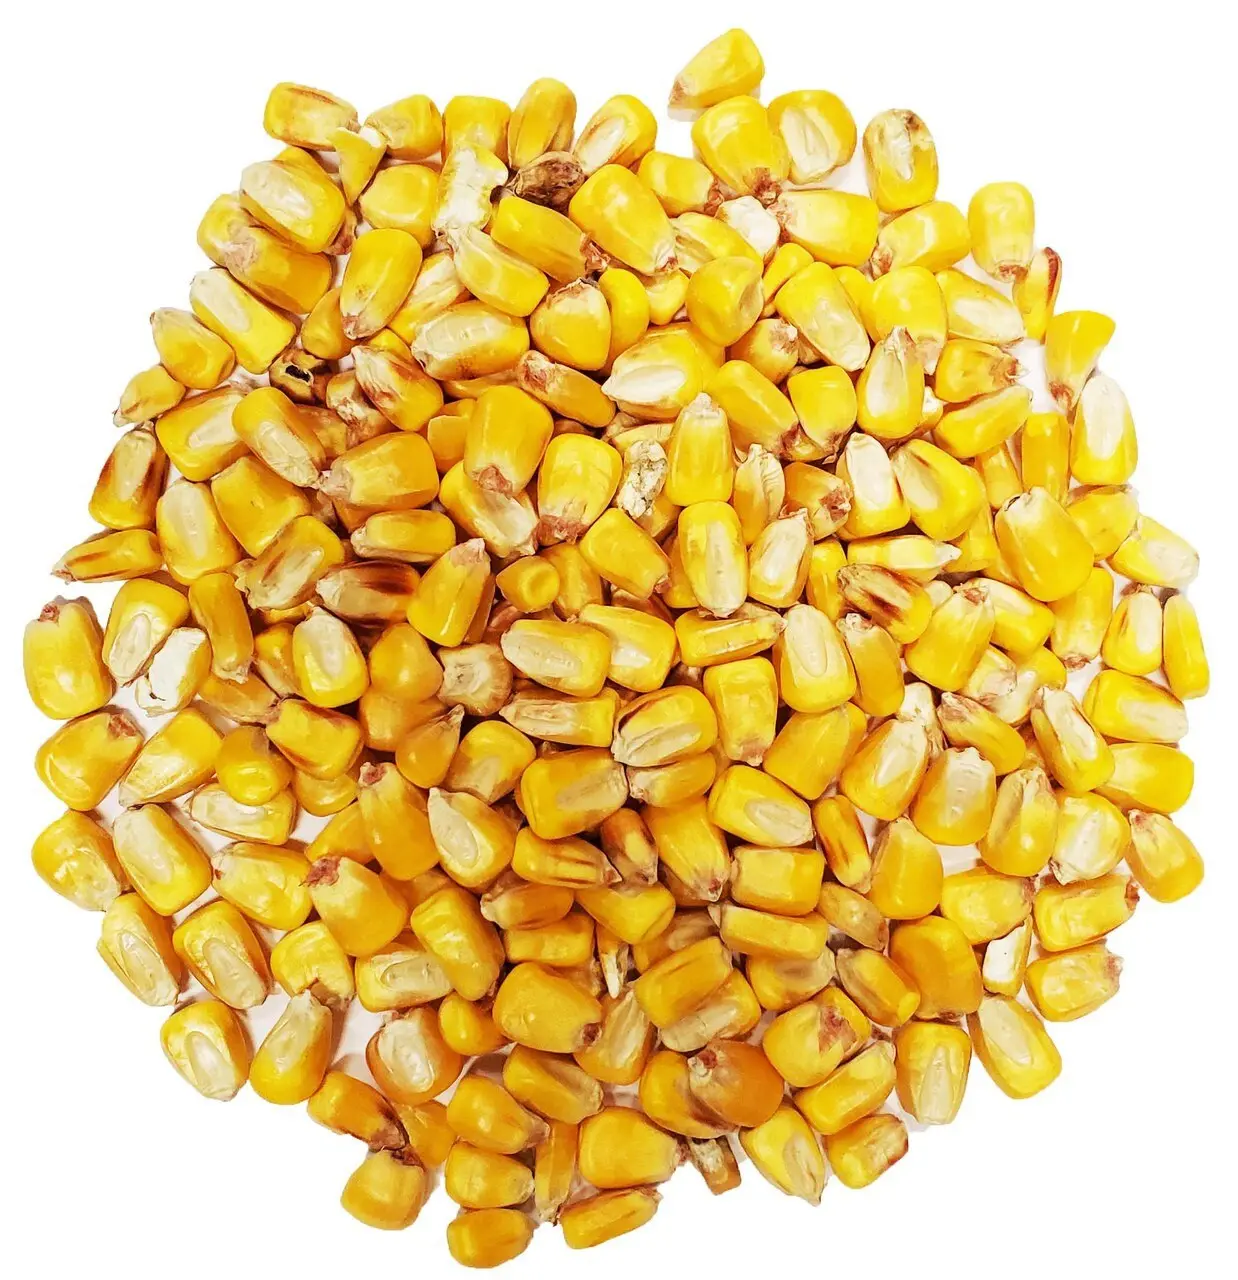 पशु आहार के लिए सर्वोत्तम गुणवत्ता वाला पीला मक्का प्राकृतिक पीला मक्का थोक मूल्य पर निर्यात के लिए उपलब्ध है